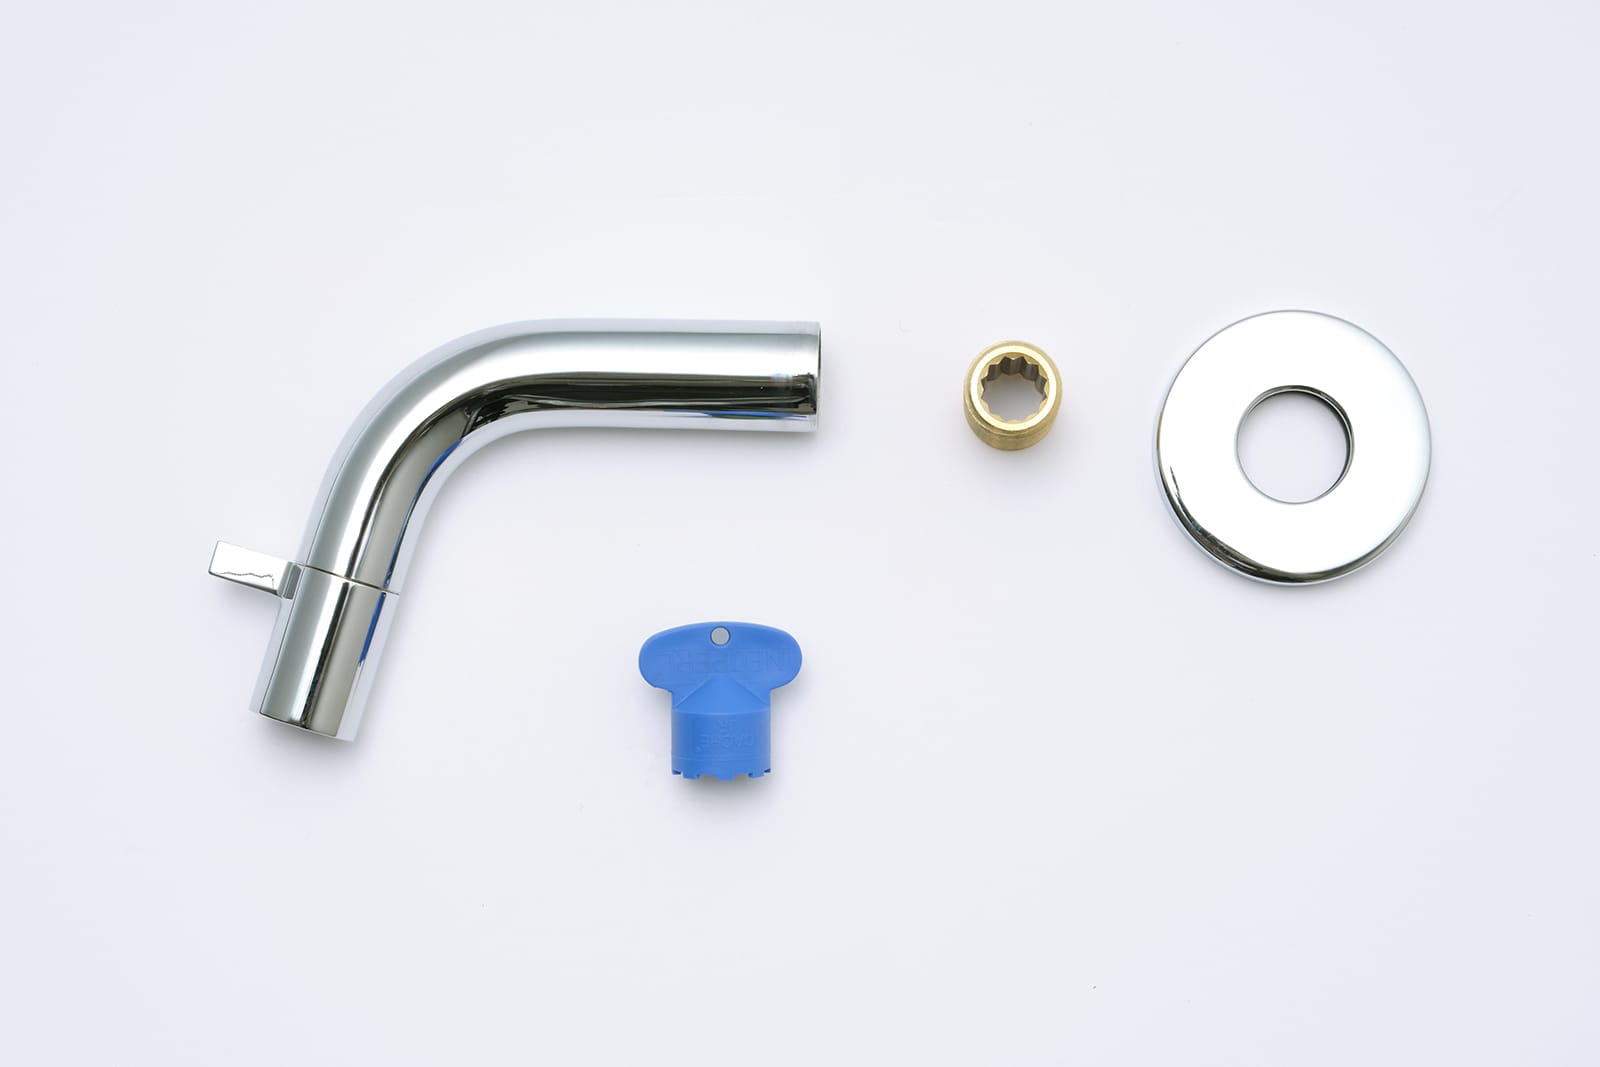 壁付けスパウトレバー水栓 洗面用 クローム L107 KB-TP011-01-G141 接続規格はG1/2。青色の付属品は吐水先部品（エアレーター）を取り外して掃除する際に必要なため、紛失しないよう保管してください